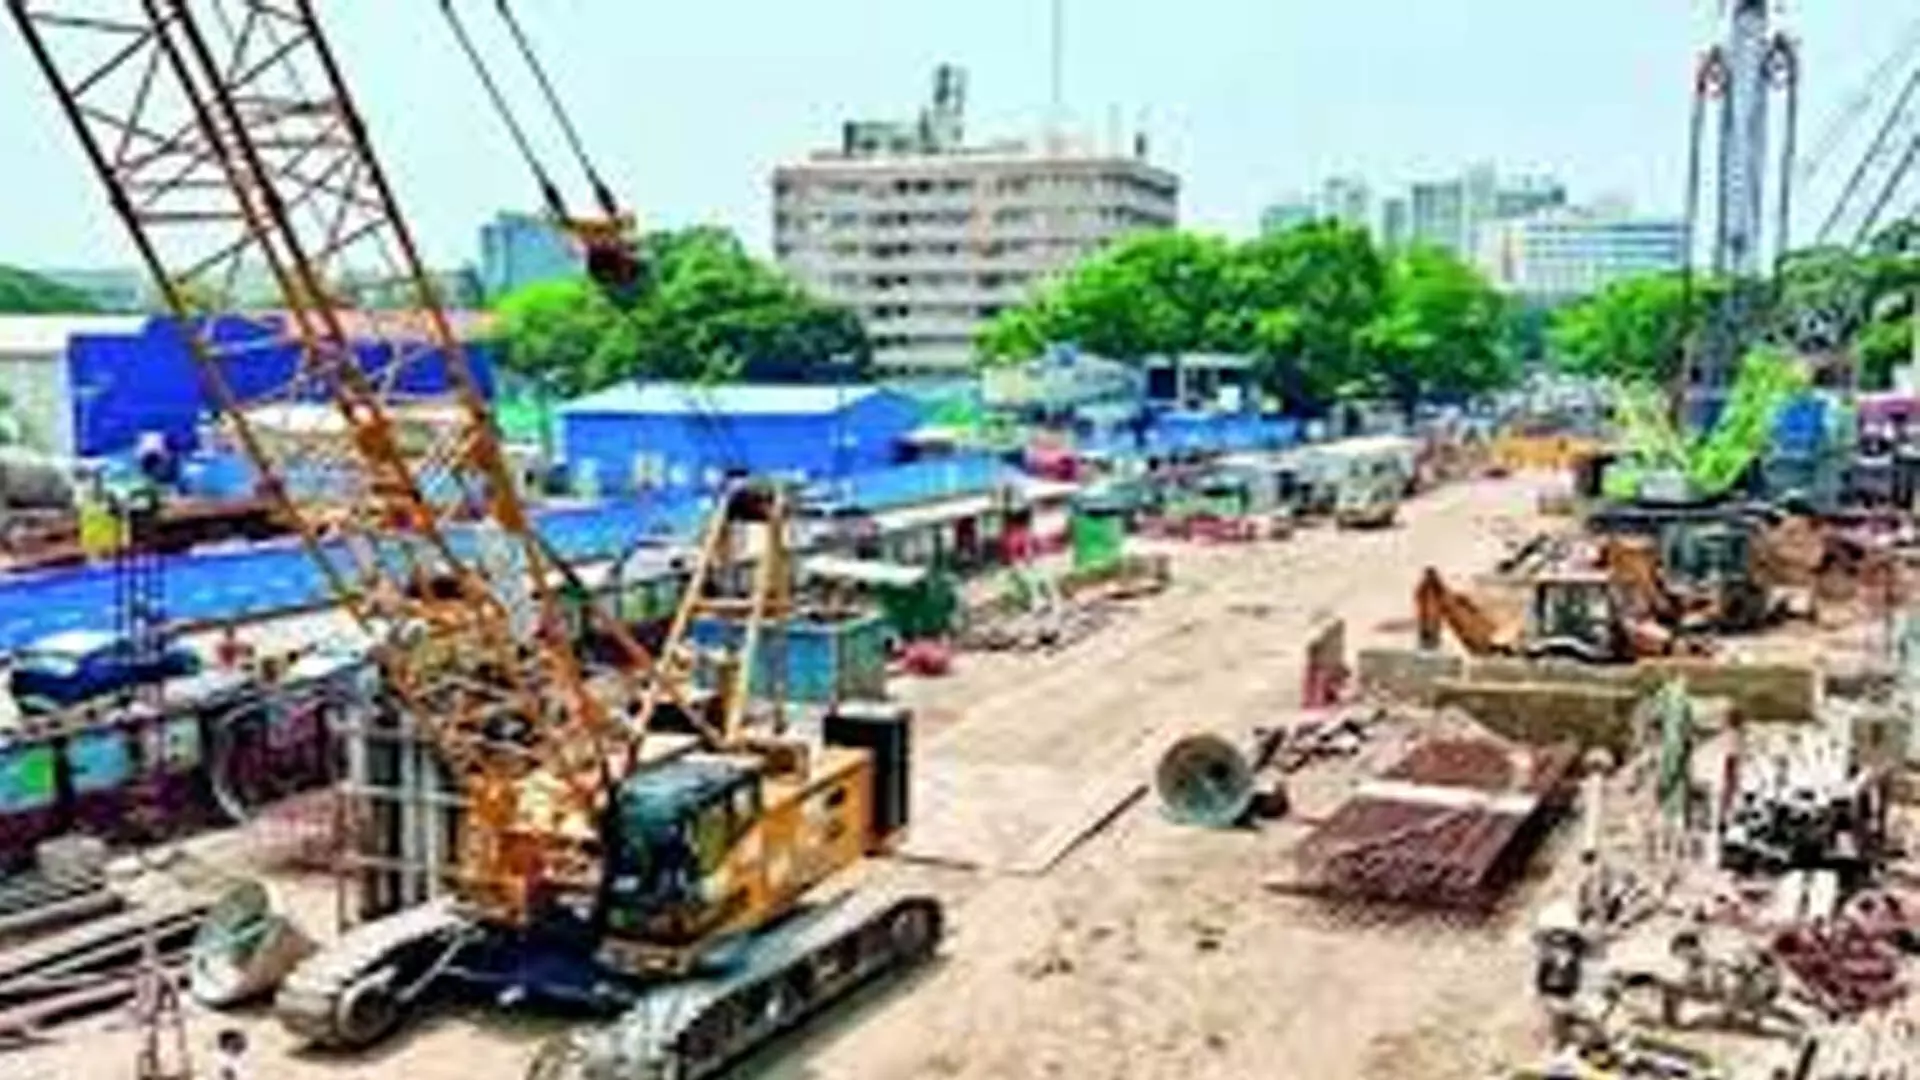 Chennai News: रोयापेट्टा में मेट्रो रेल सुरंग का काम जल्द ही शुरू होगा